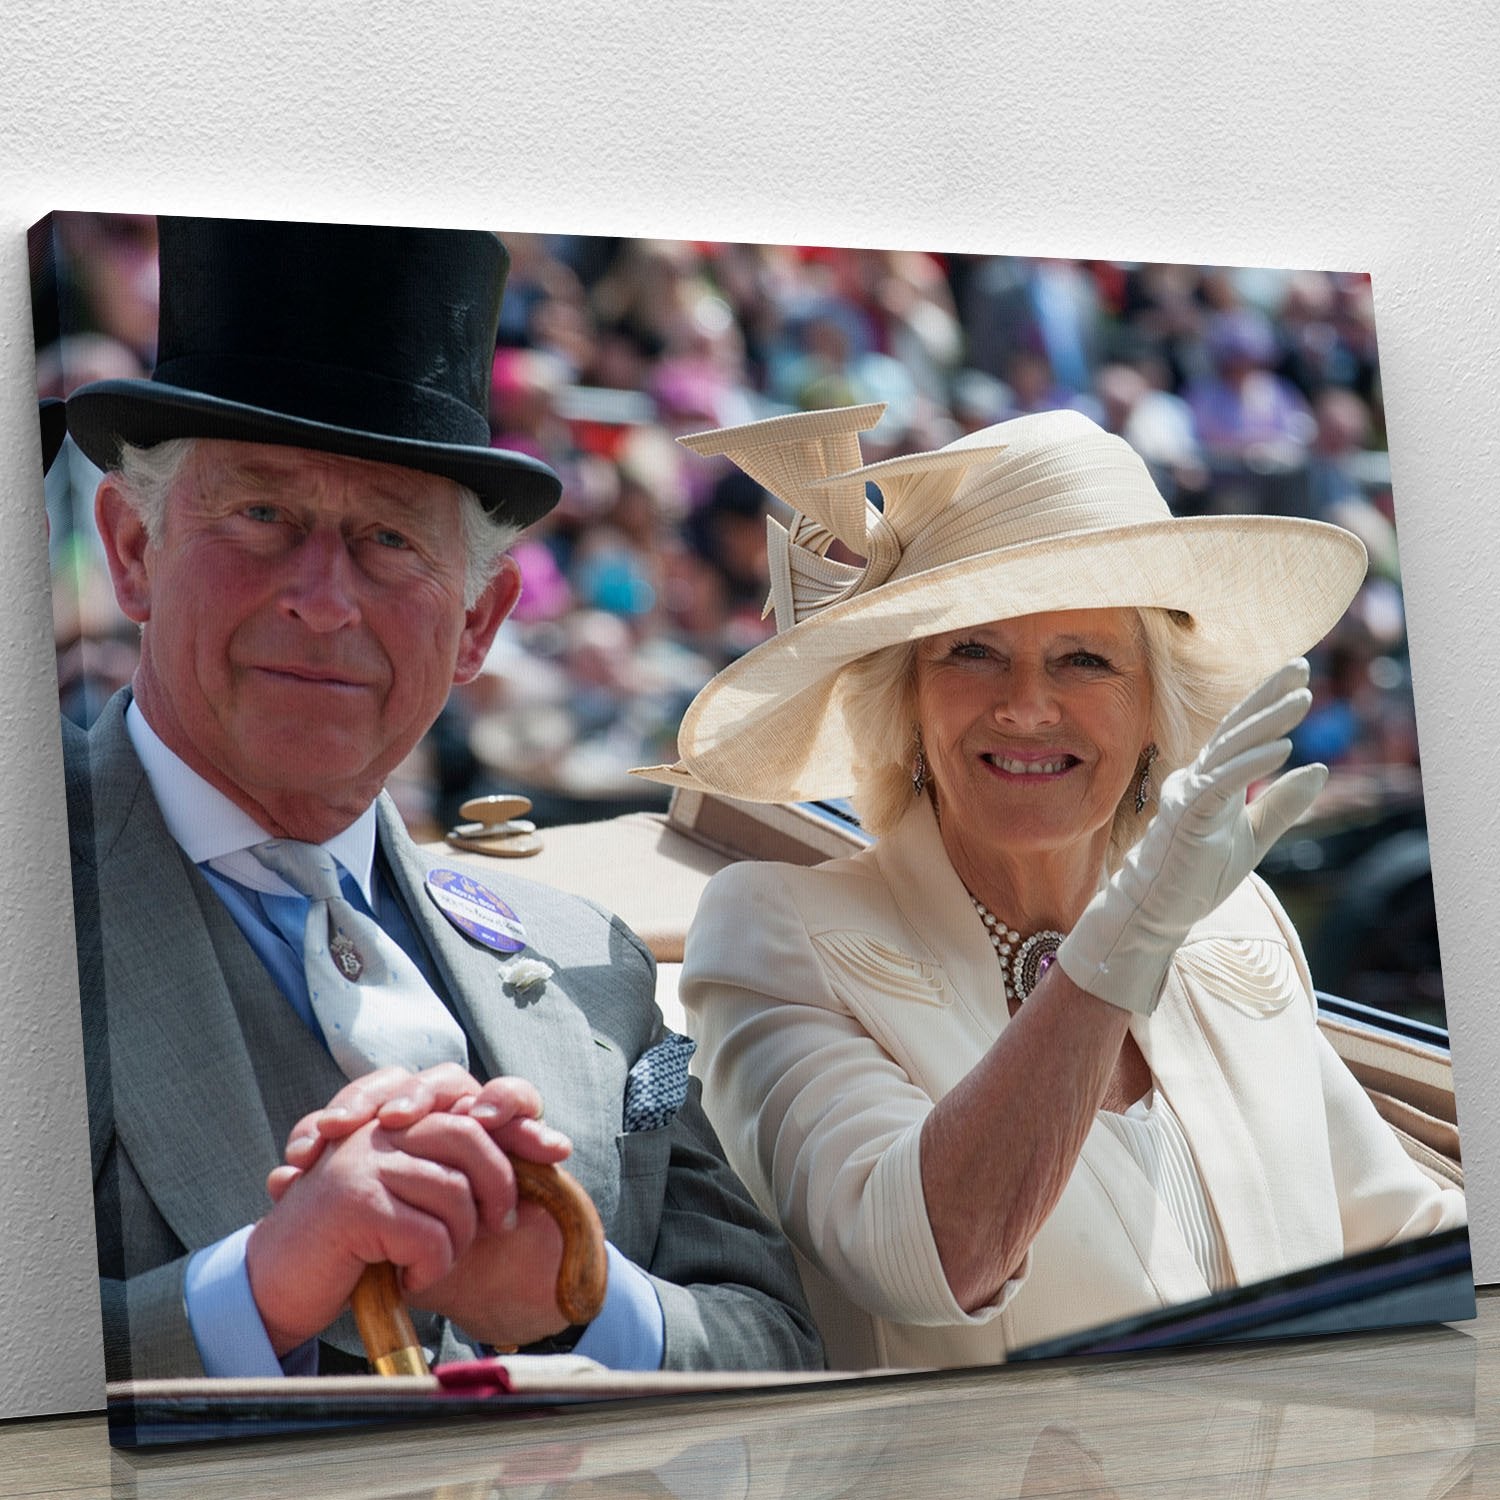 Prince Charles and Camilla at the Royal Ascot Canvas Print or Poster